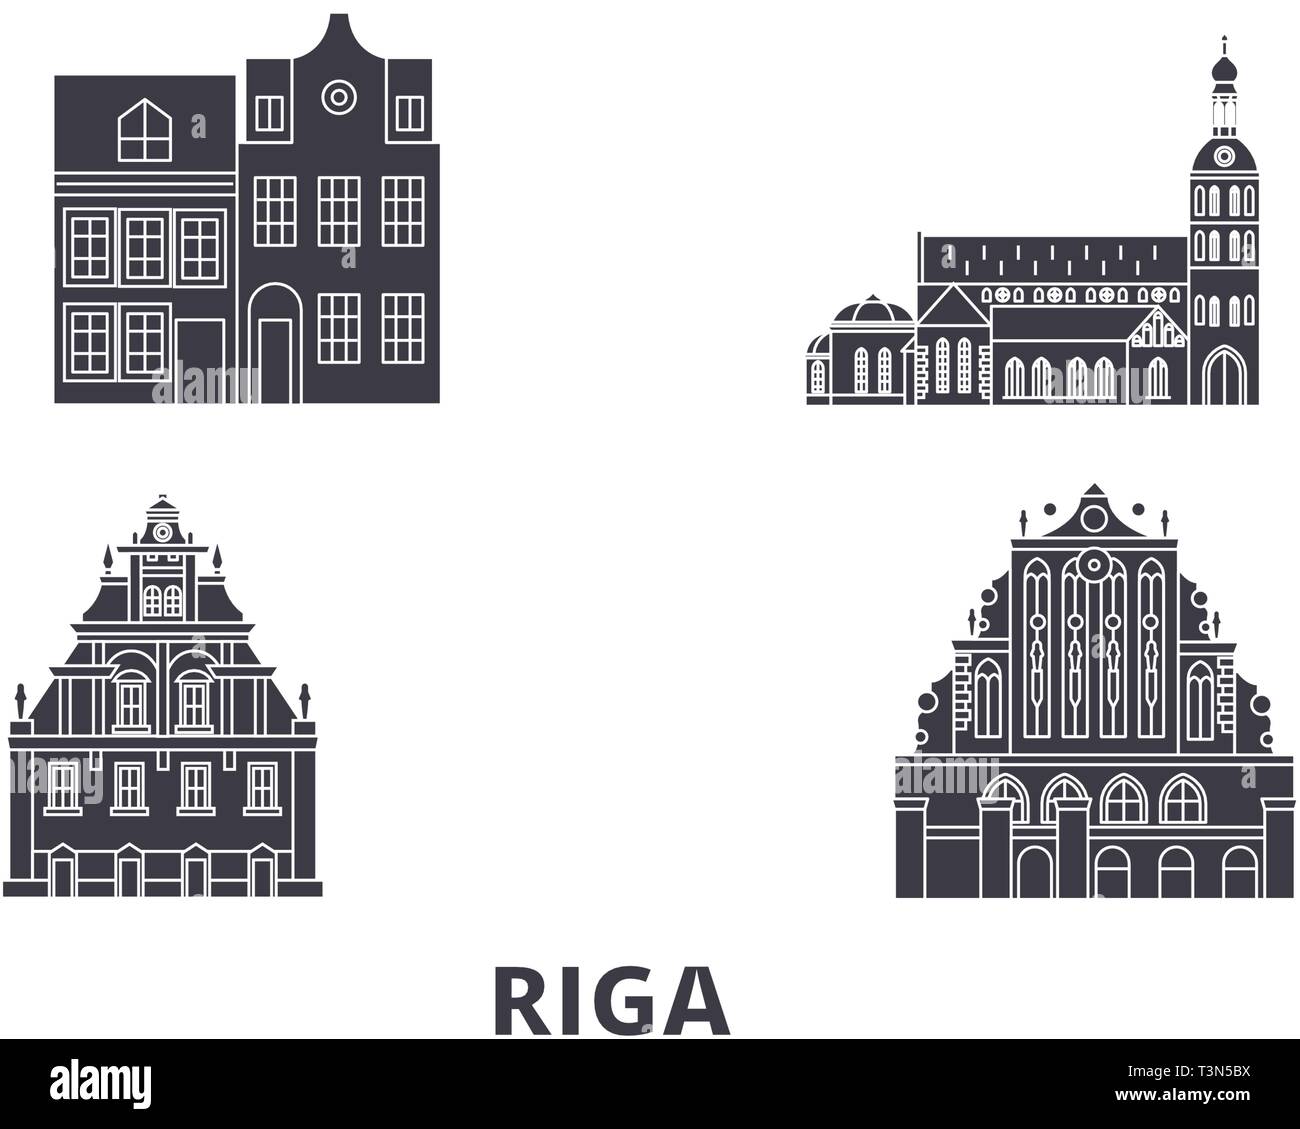 Lettland, Riga Flachbild reisen Skyline. Lettland, Riga schwarz Stadt Vektor-illustration, Symbol, Reisen, Sehenswürdigkeiten, Wahrzeichen. Stock Vektor